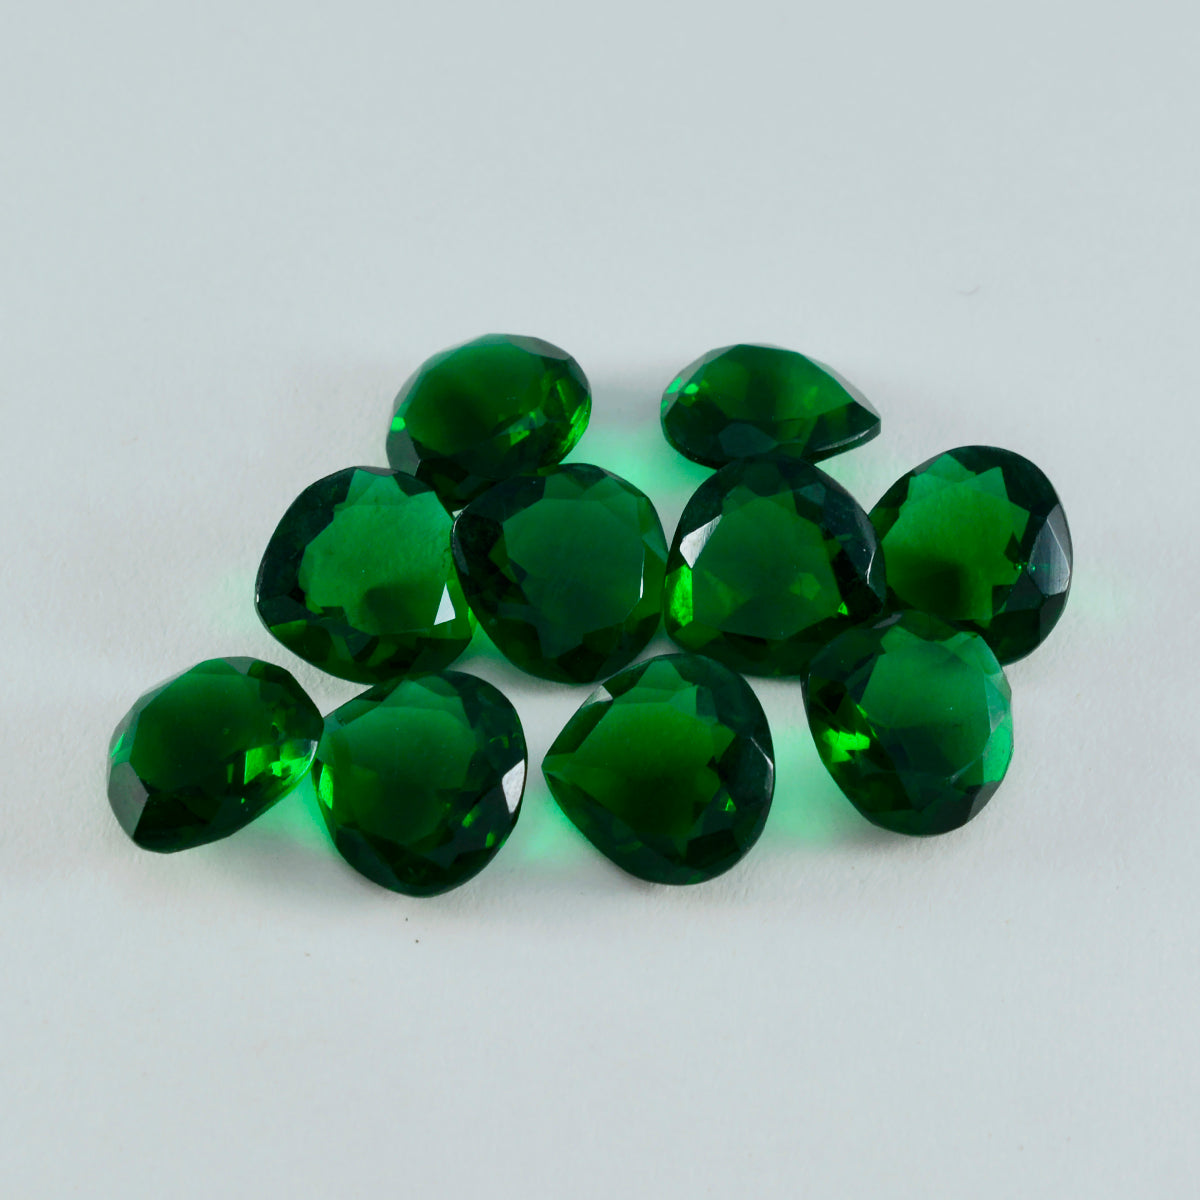 riyogems 1шт зеленый изумруд cz ограненный 10x10 мм в форме сердца фантастическое качество свободный драгоценный камень